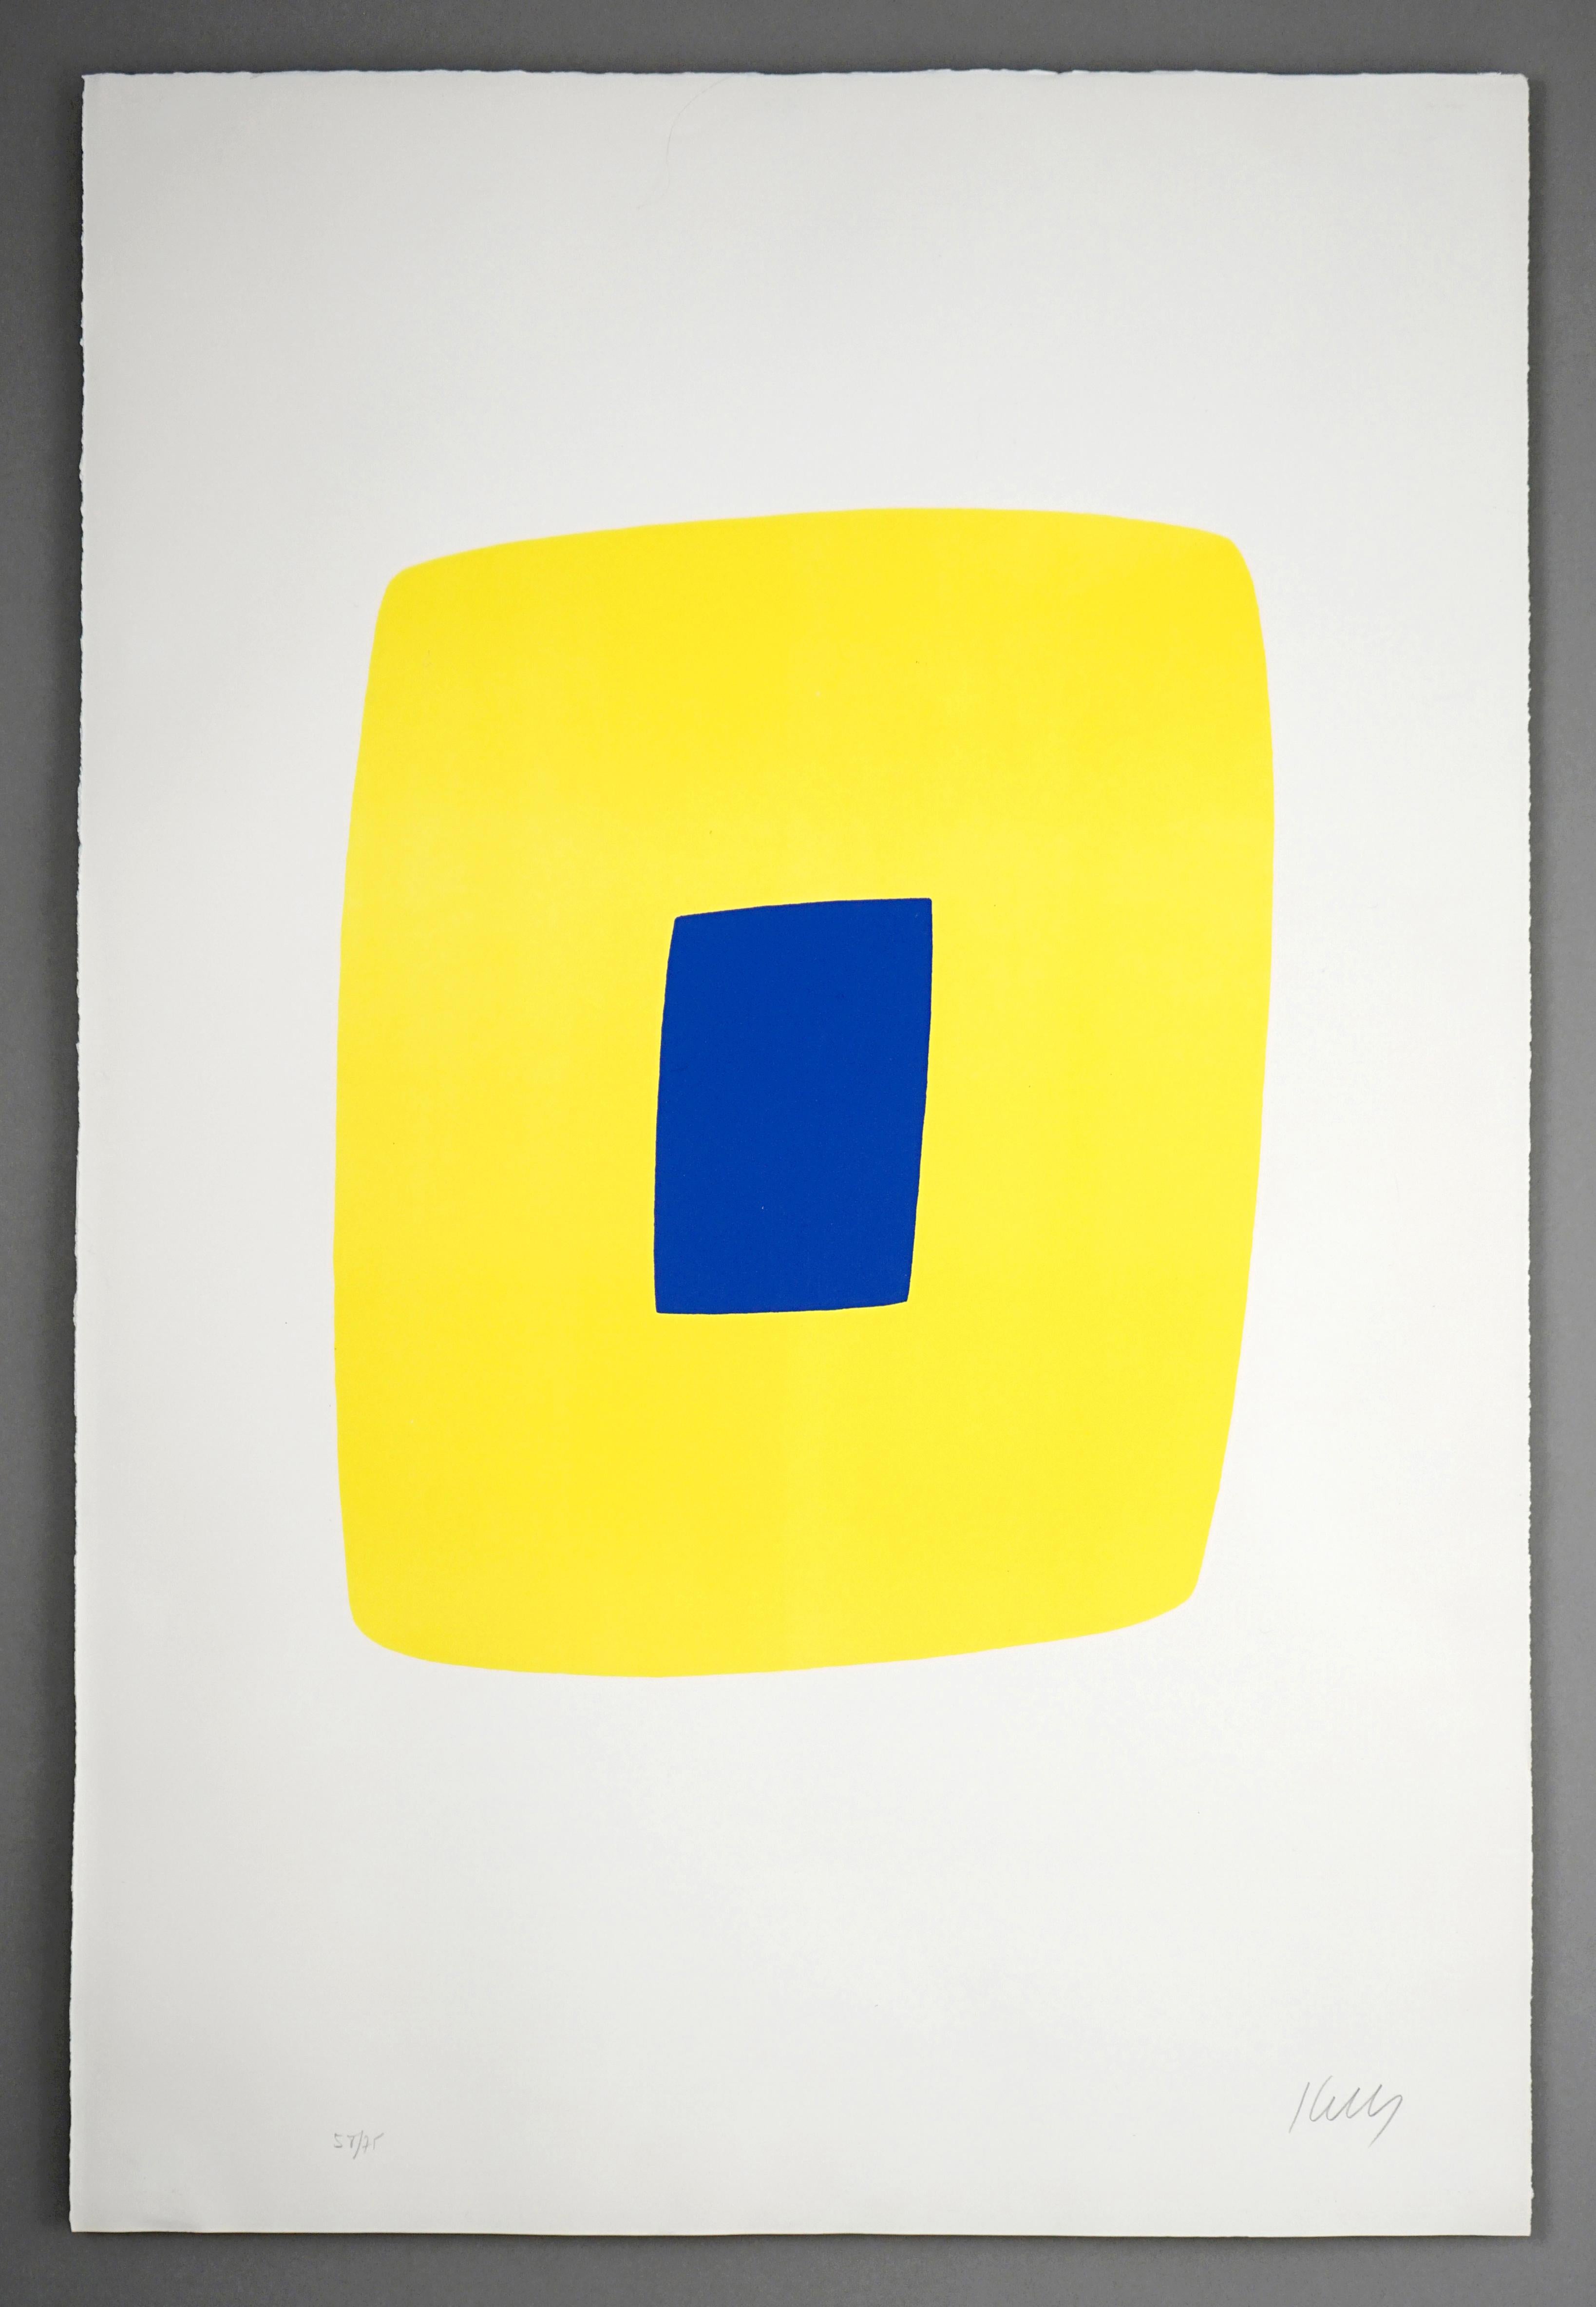 Ellsworth Kelly Abstract Print - Yellow with Dark Blue (Jaune avec bleu foncé)